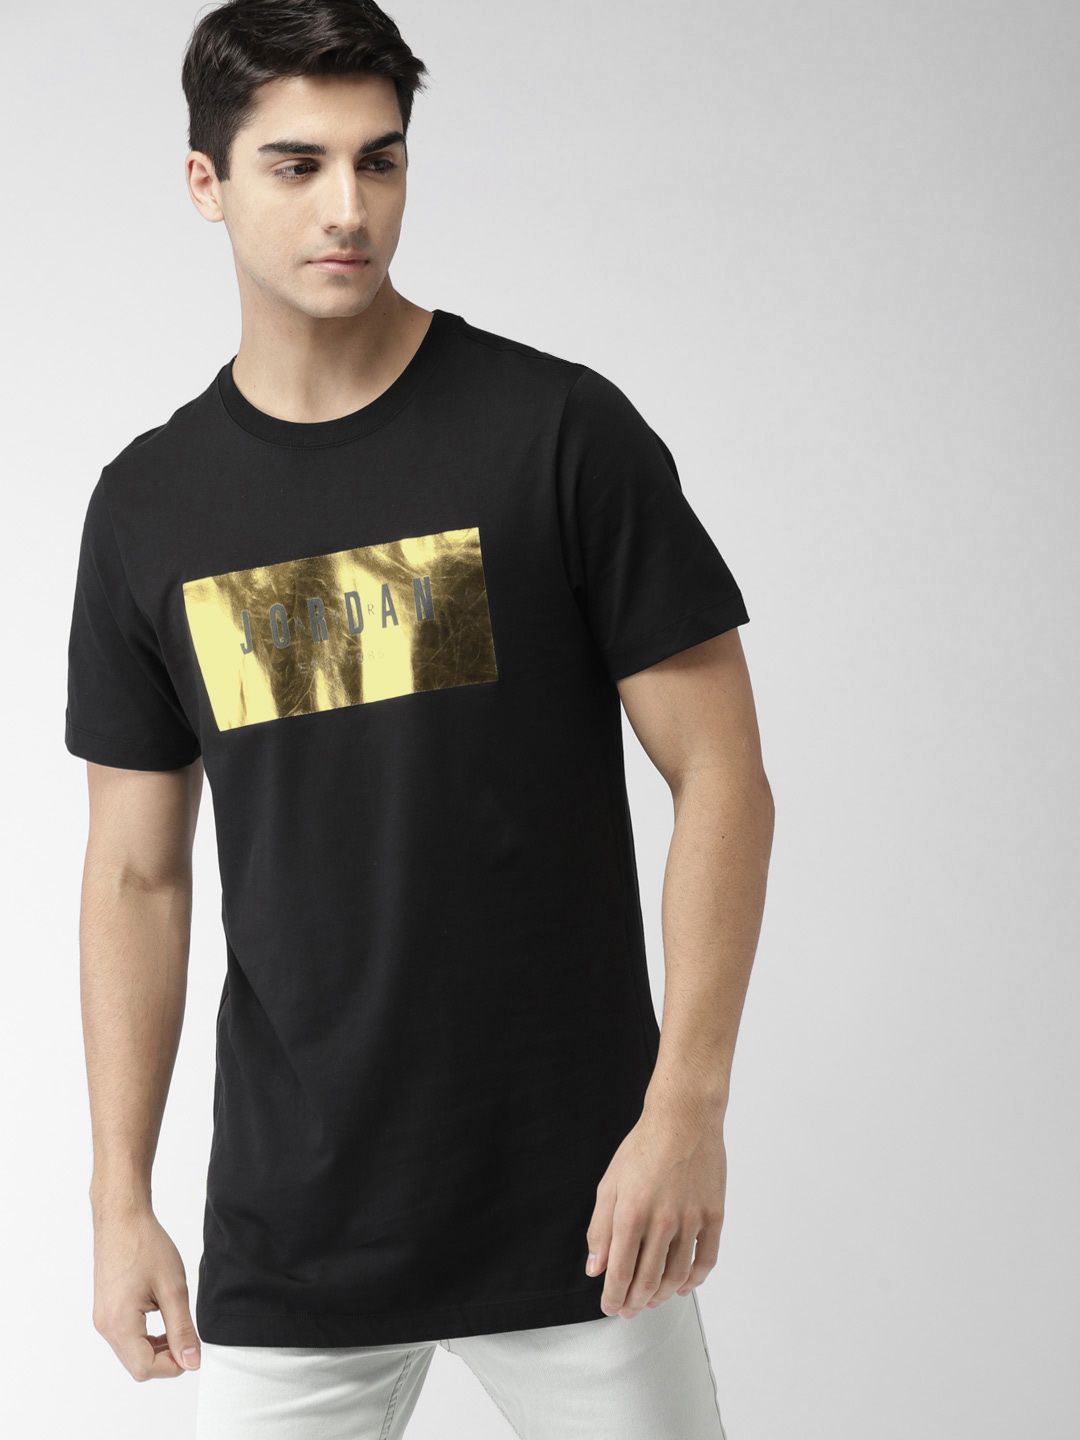 gold jordan t shirt